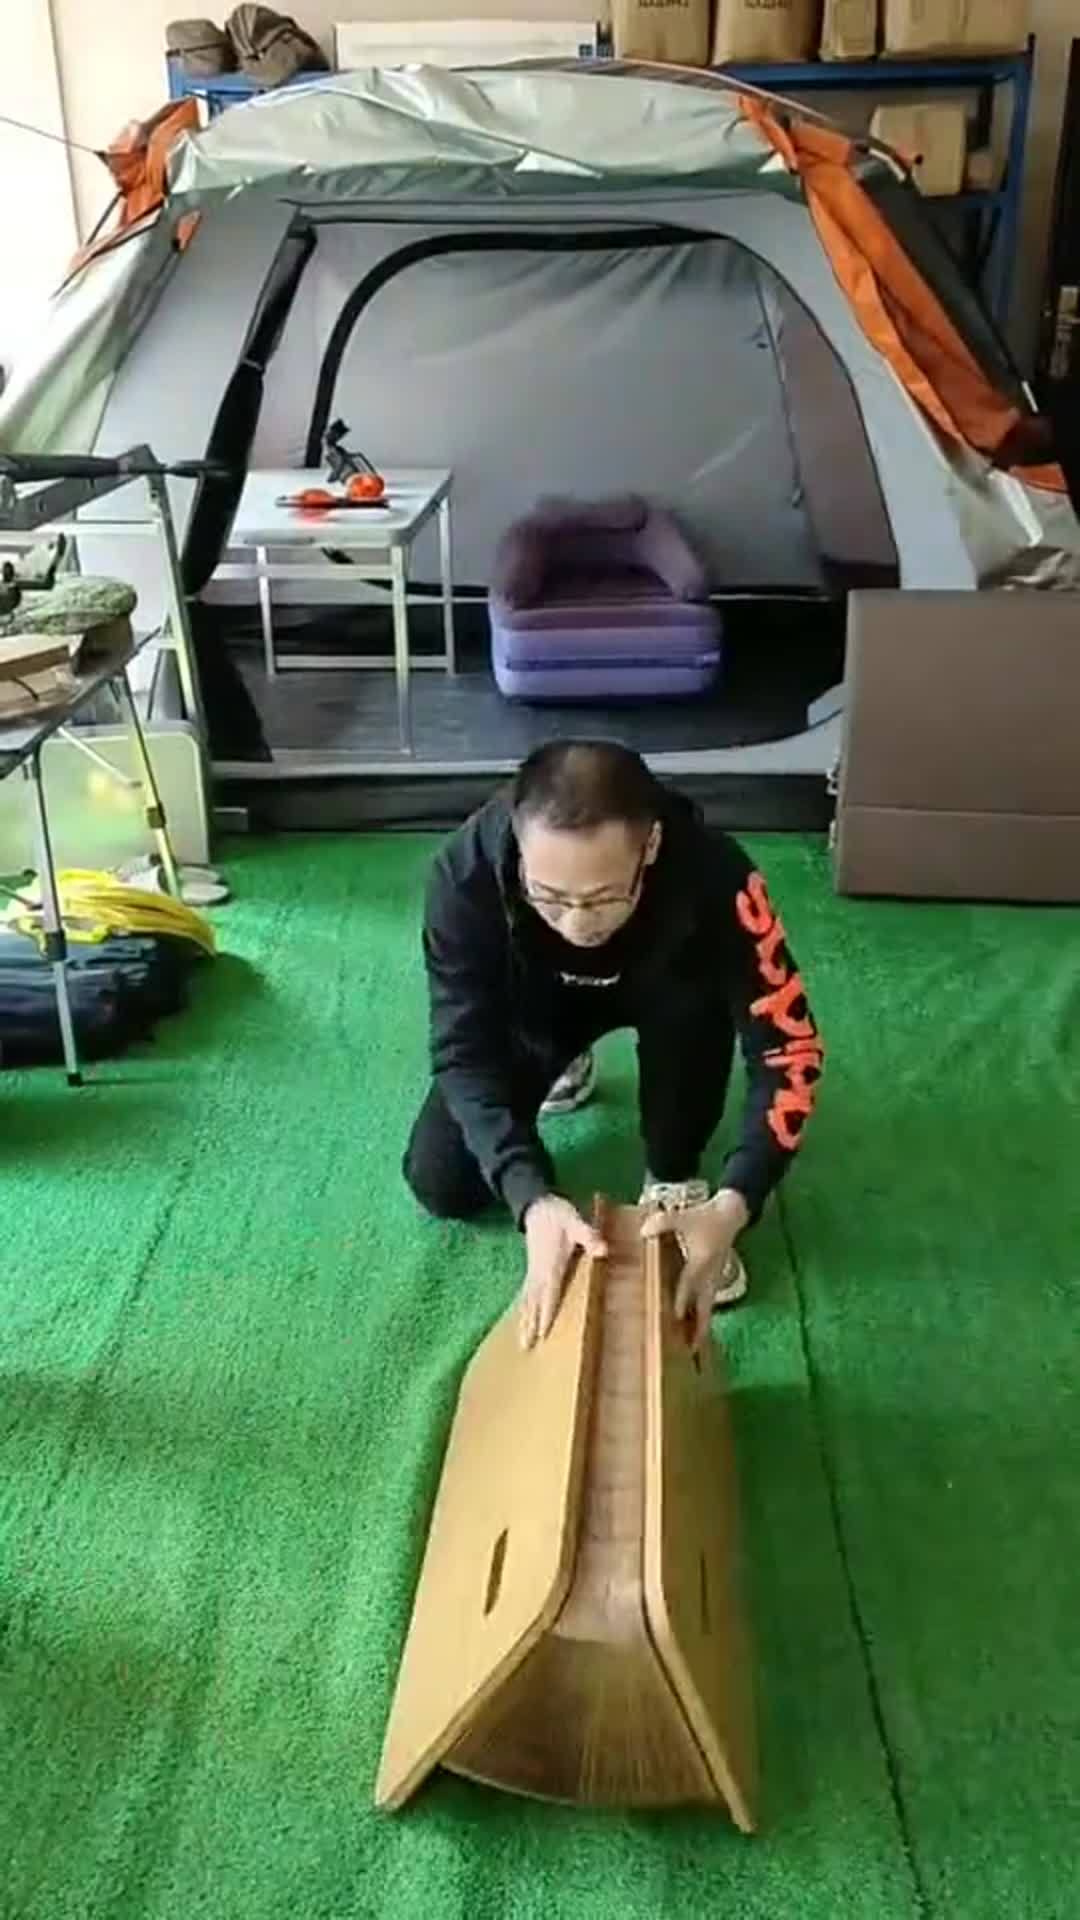 焊工自制单人折叠床图片